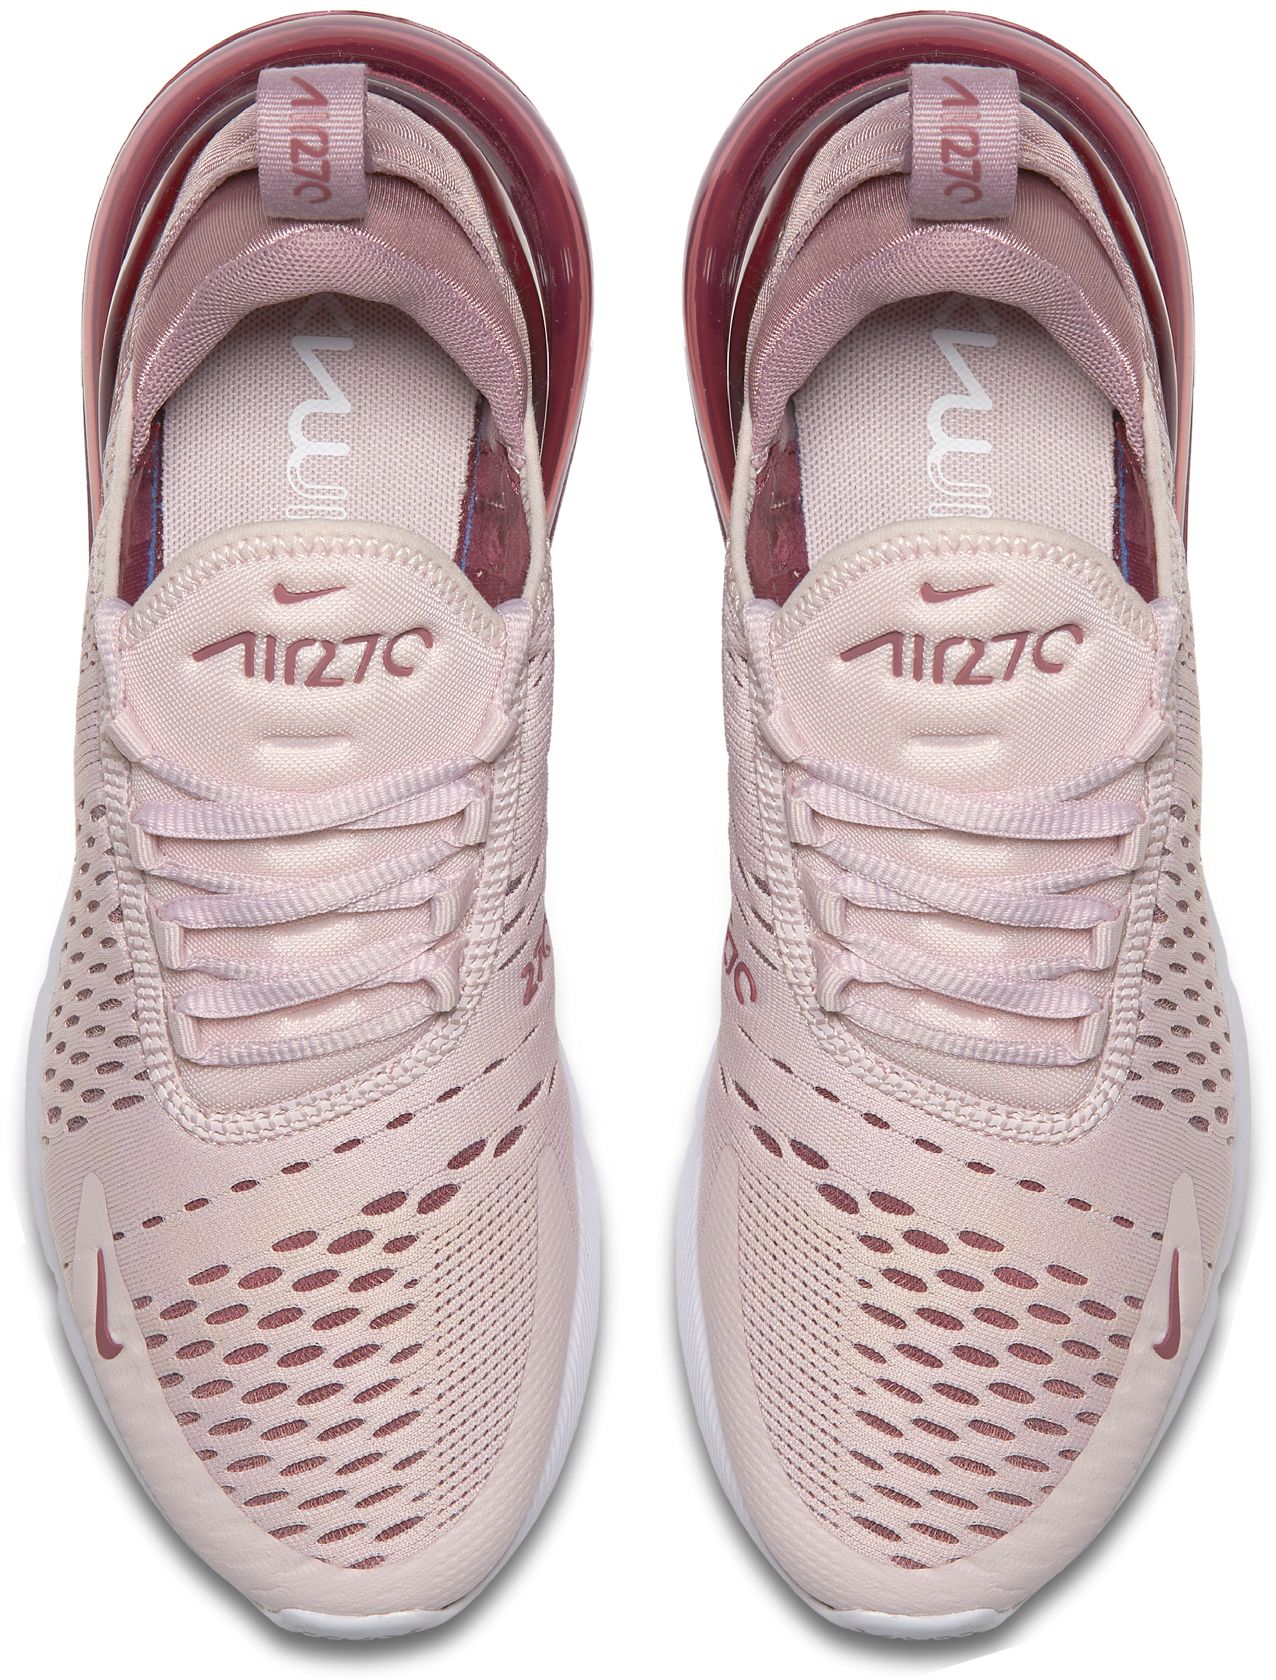 nike women's sneakers air max 270